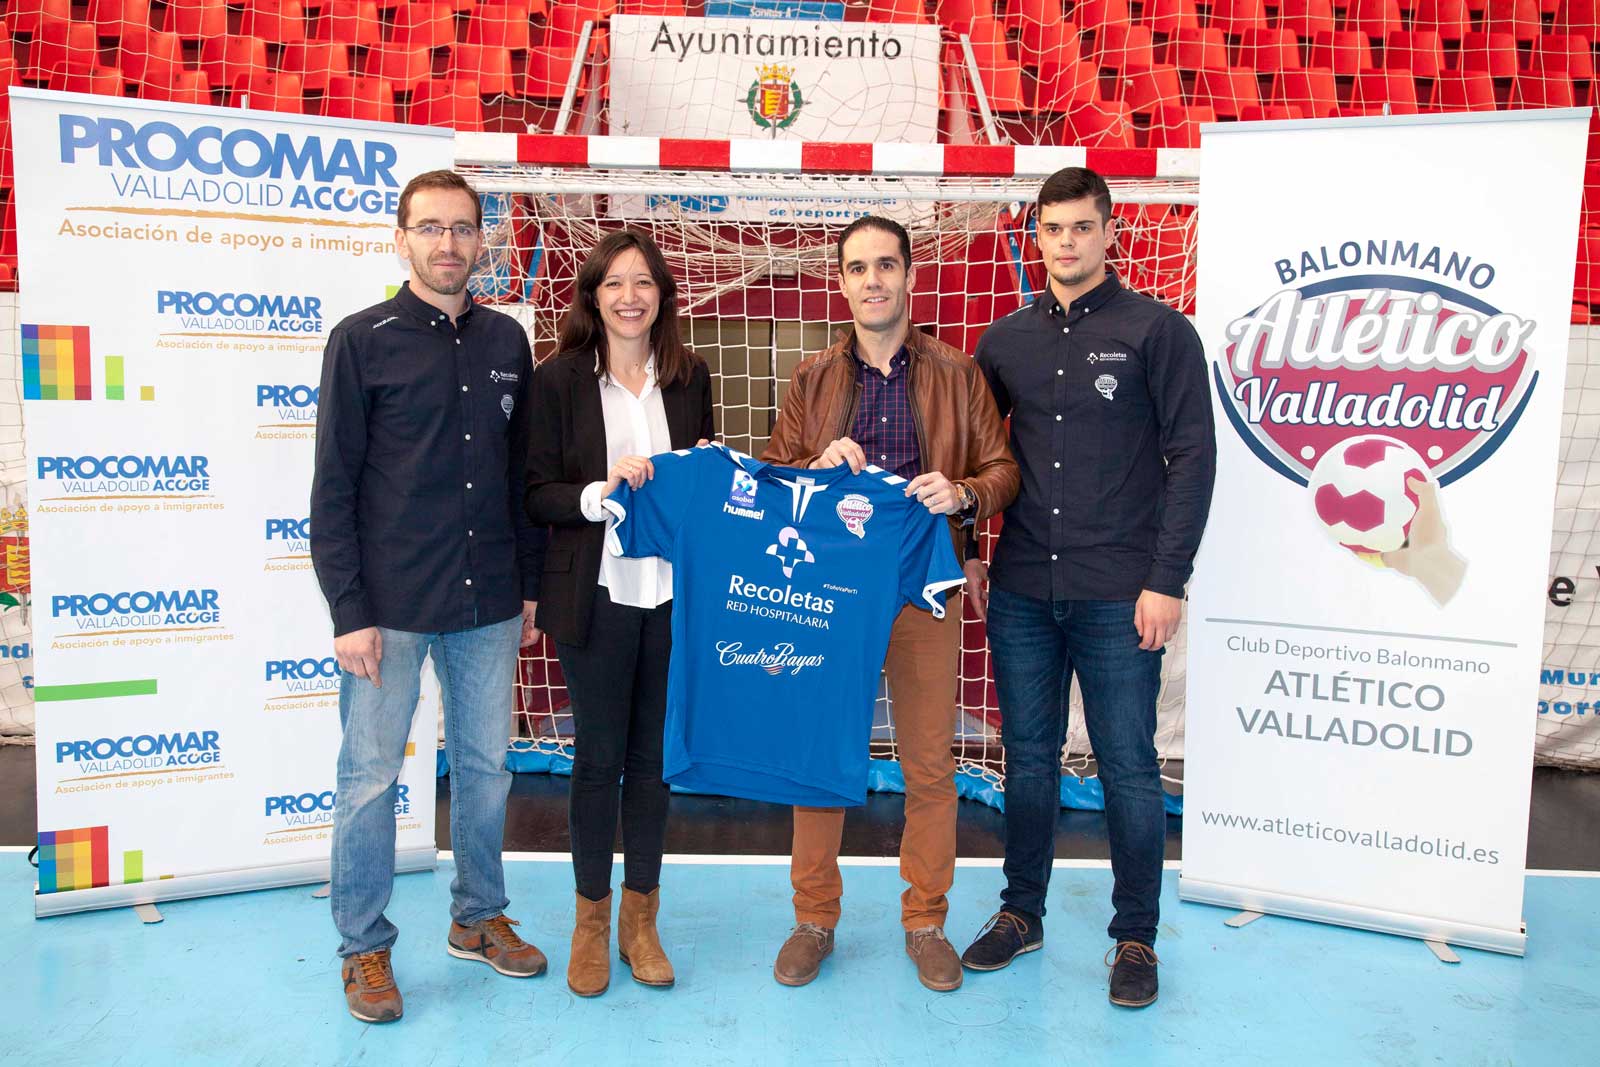 Recoletas Atlético Valladolid-Naturhouse La Rioja, partido solidario en beneficio de la asociación Procomar Valladolid Acoge